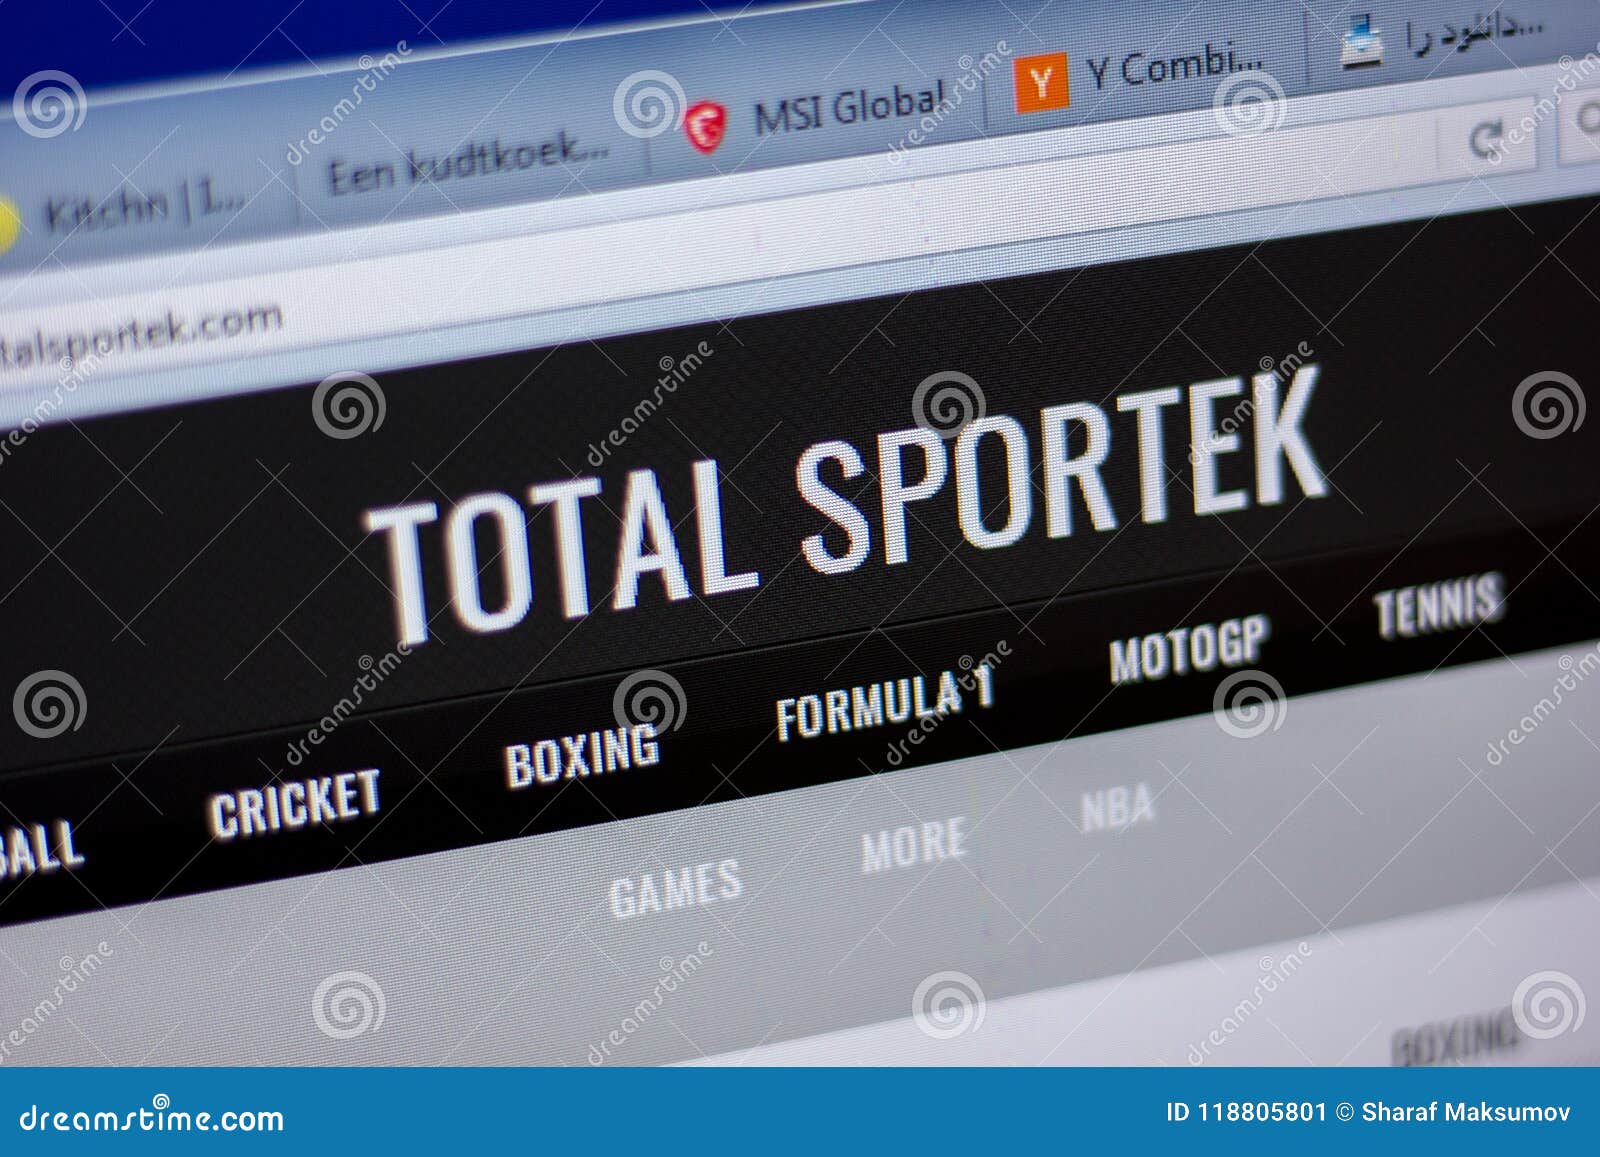 totalsportek site totalsportek com